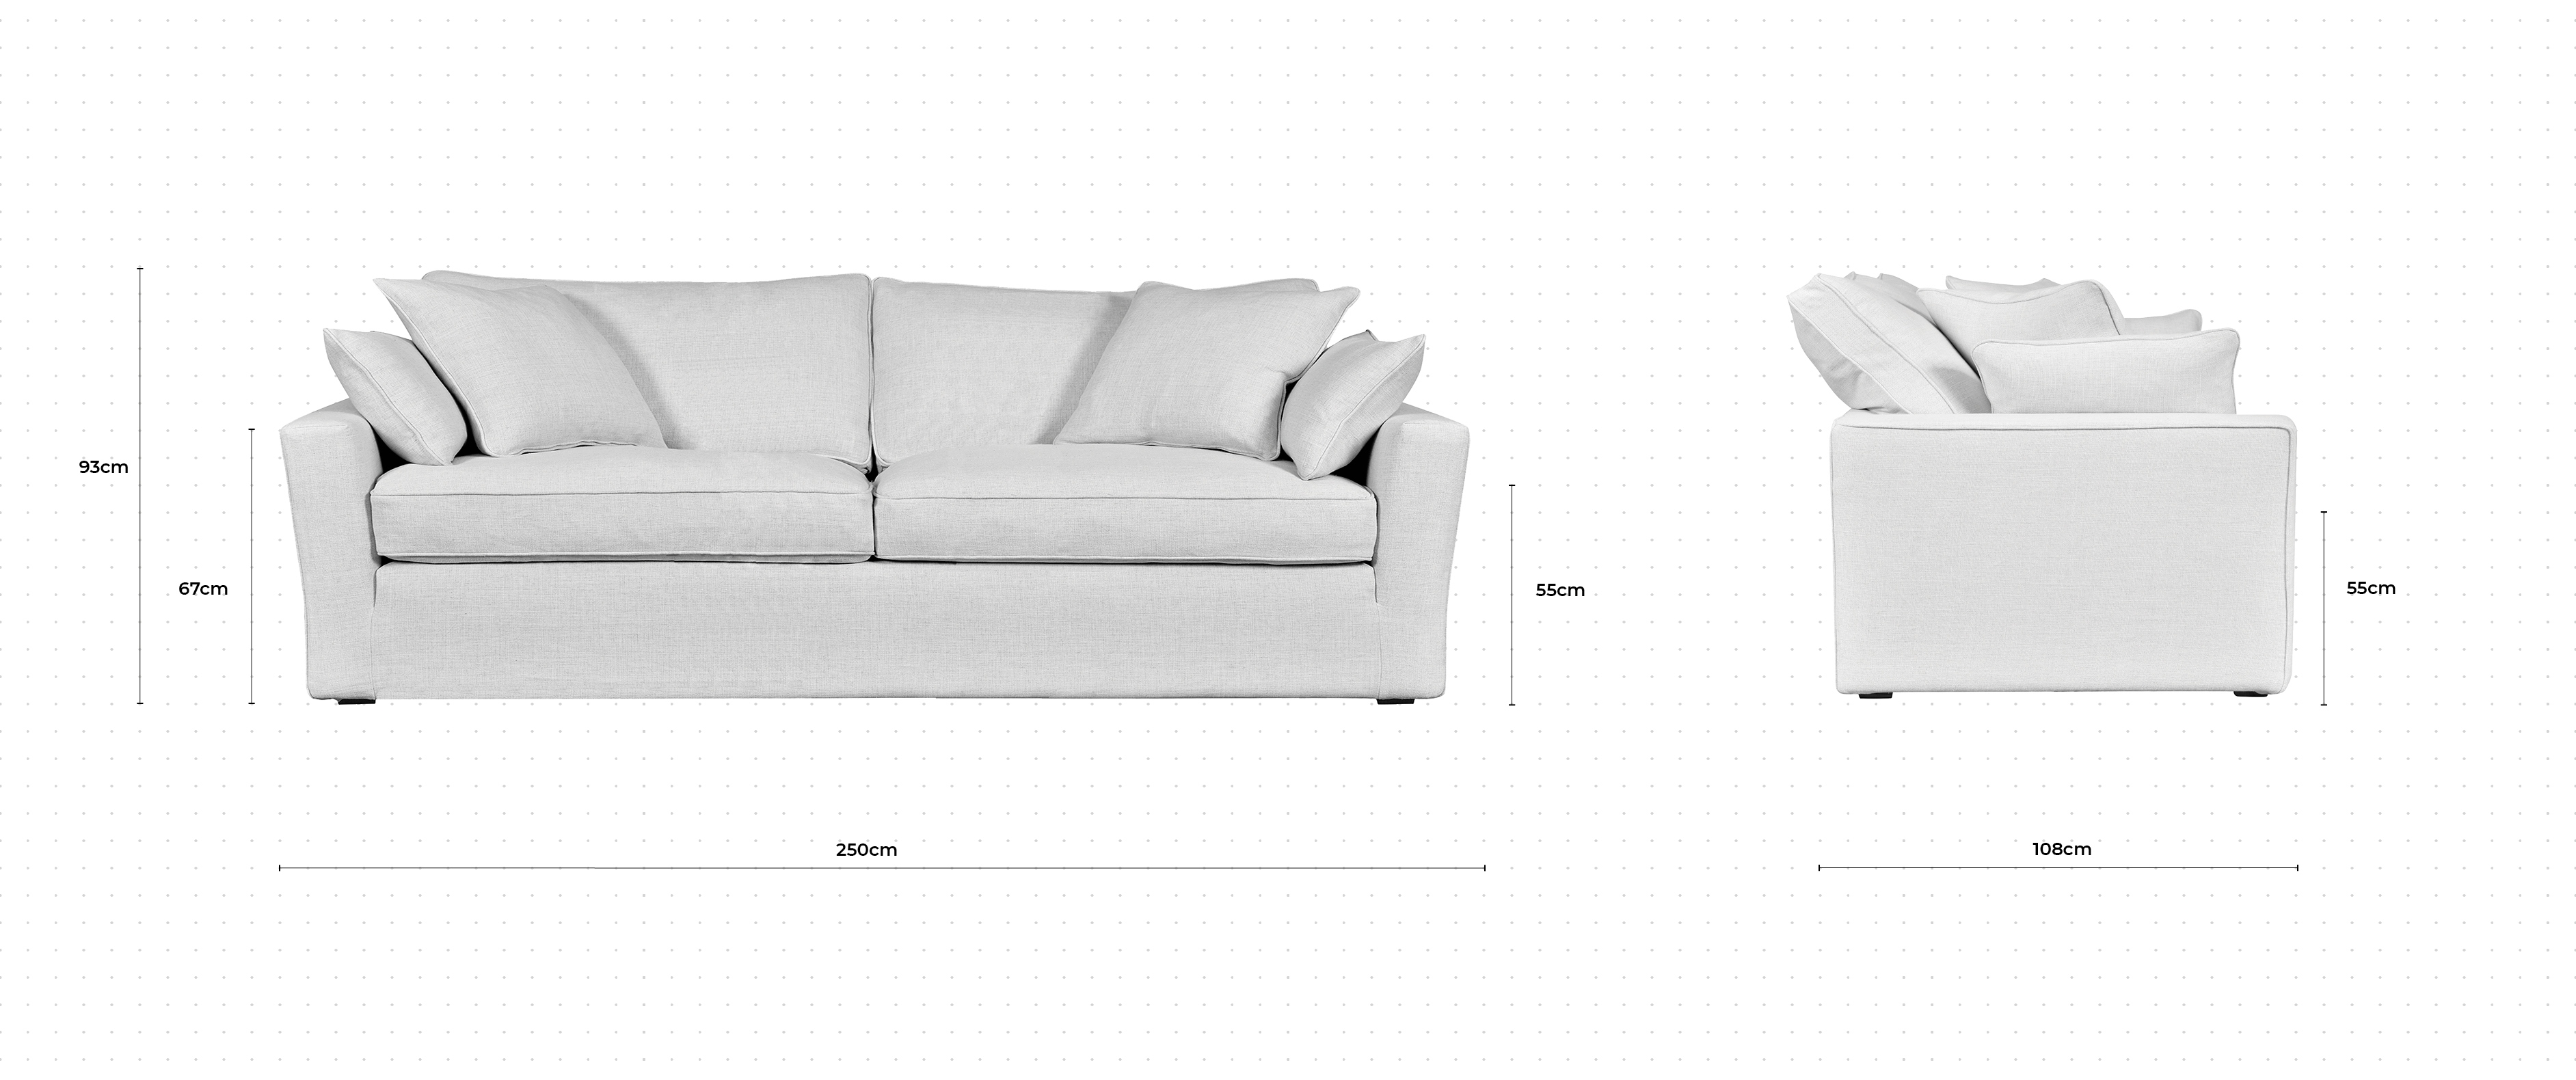 Caruso 3 Seater Sofa dimensions